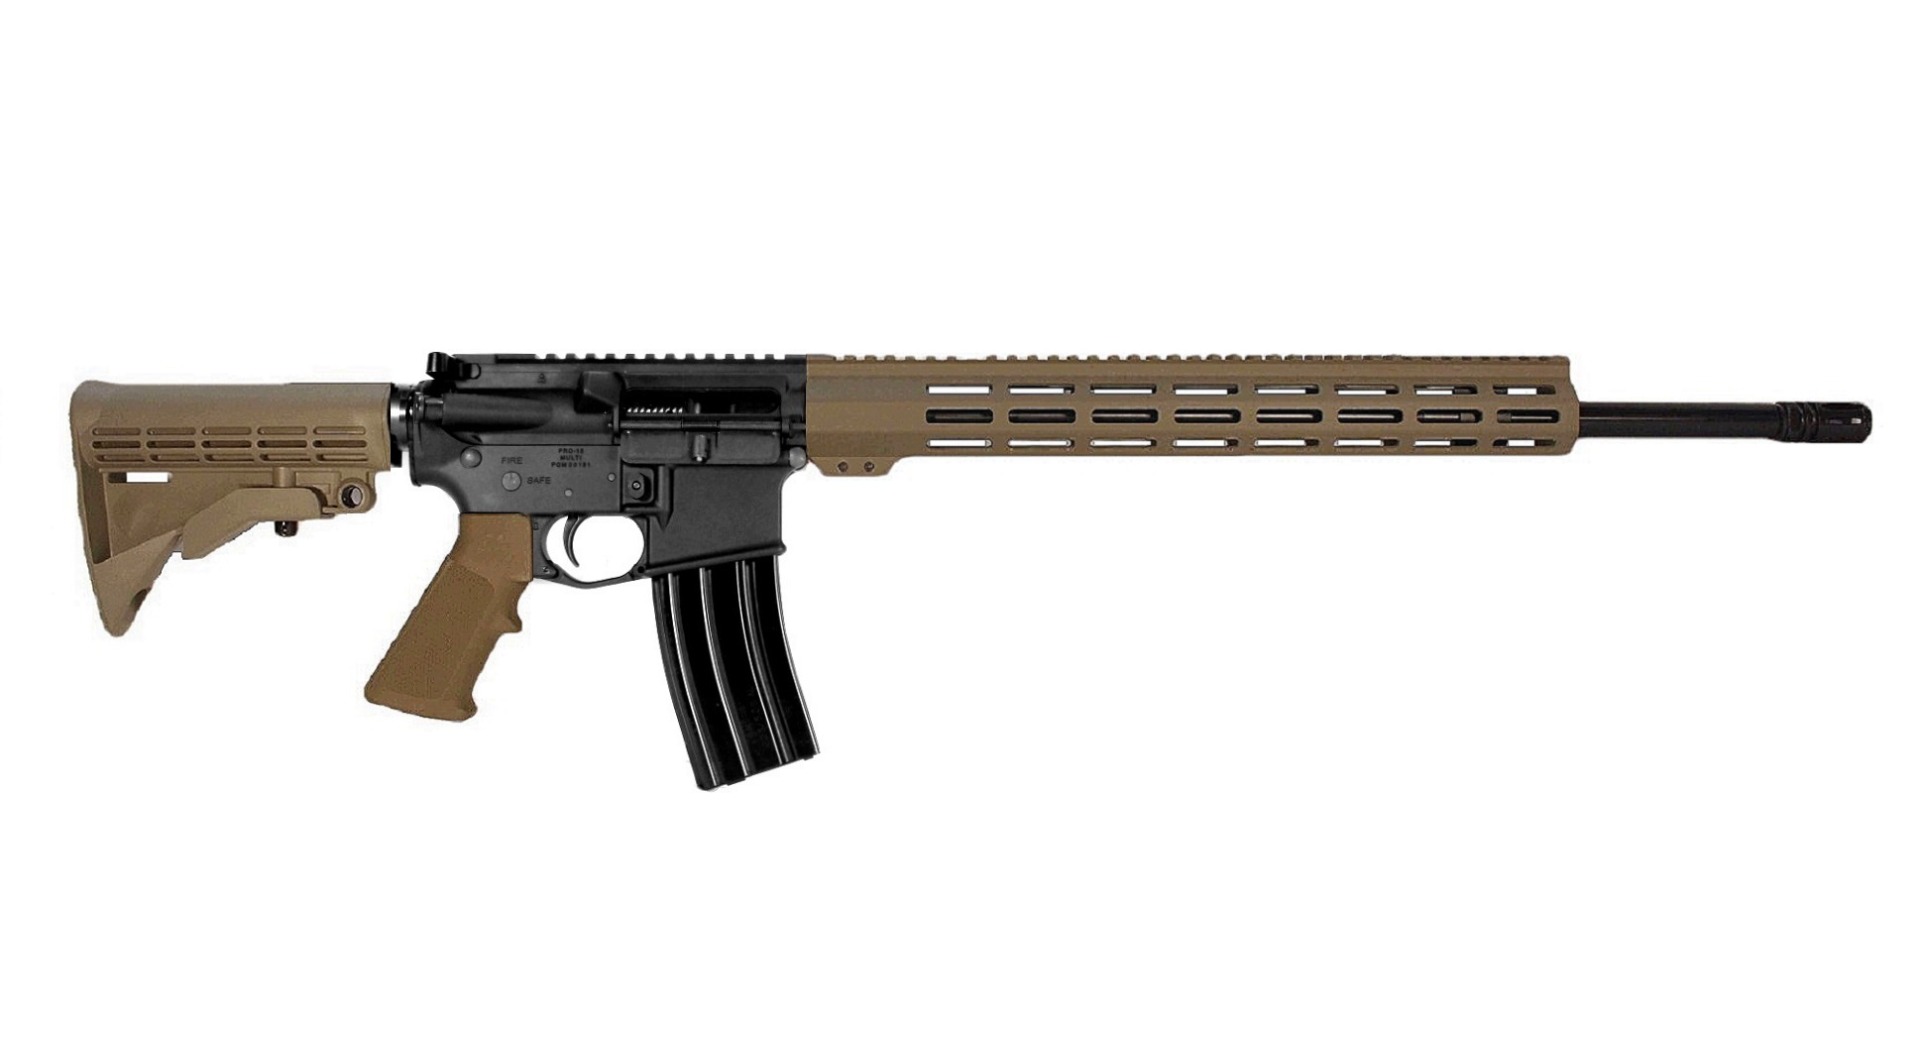 20 inch 6mm ARC AR Rifle in BLK/FDE